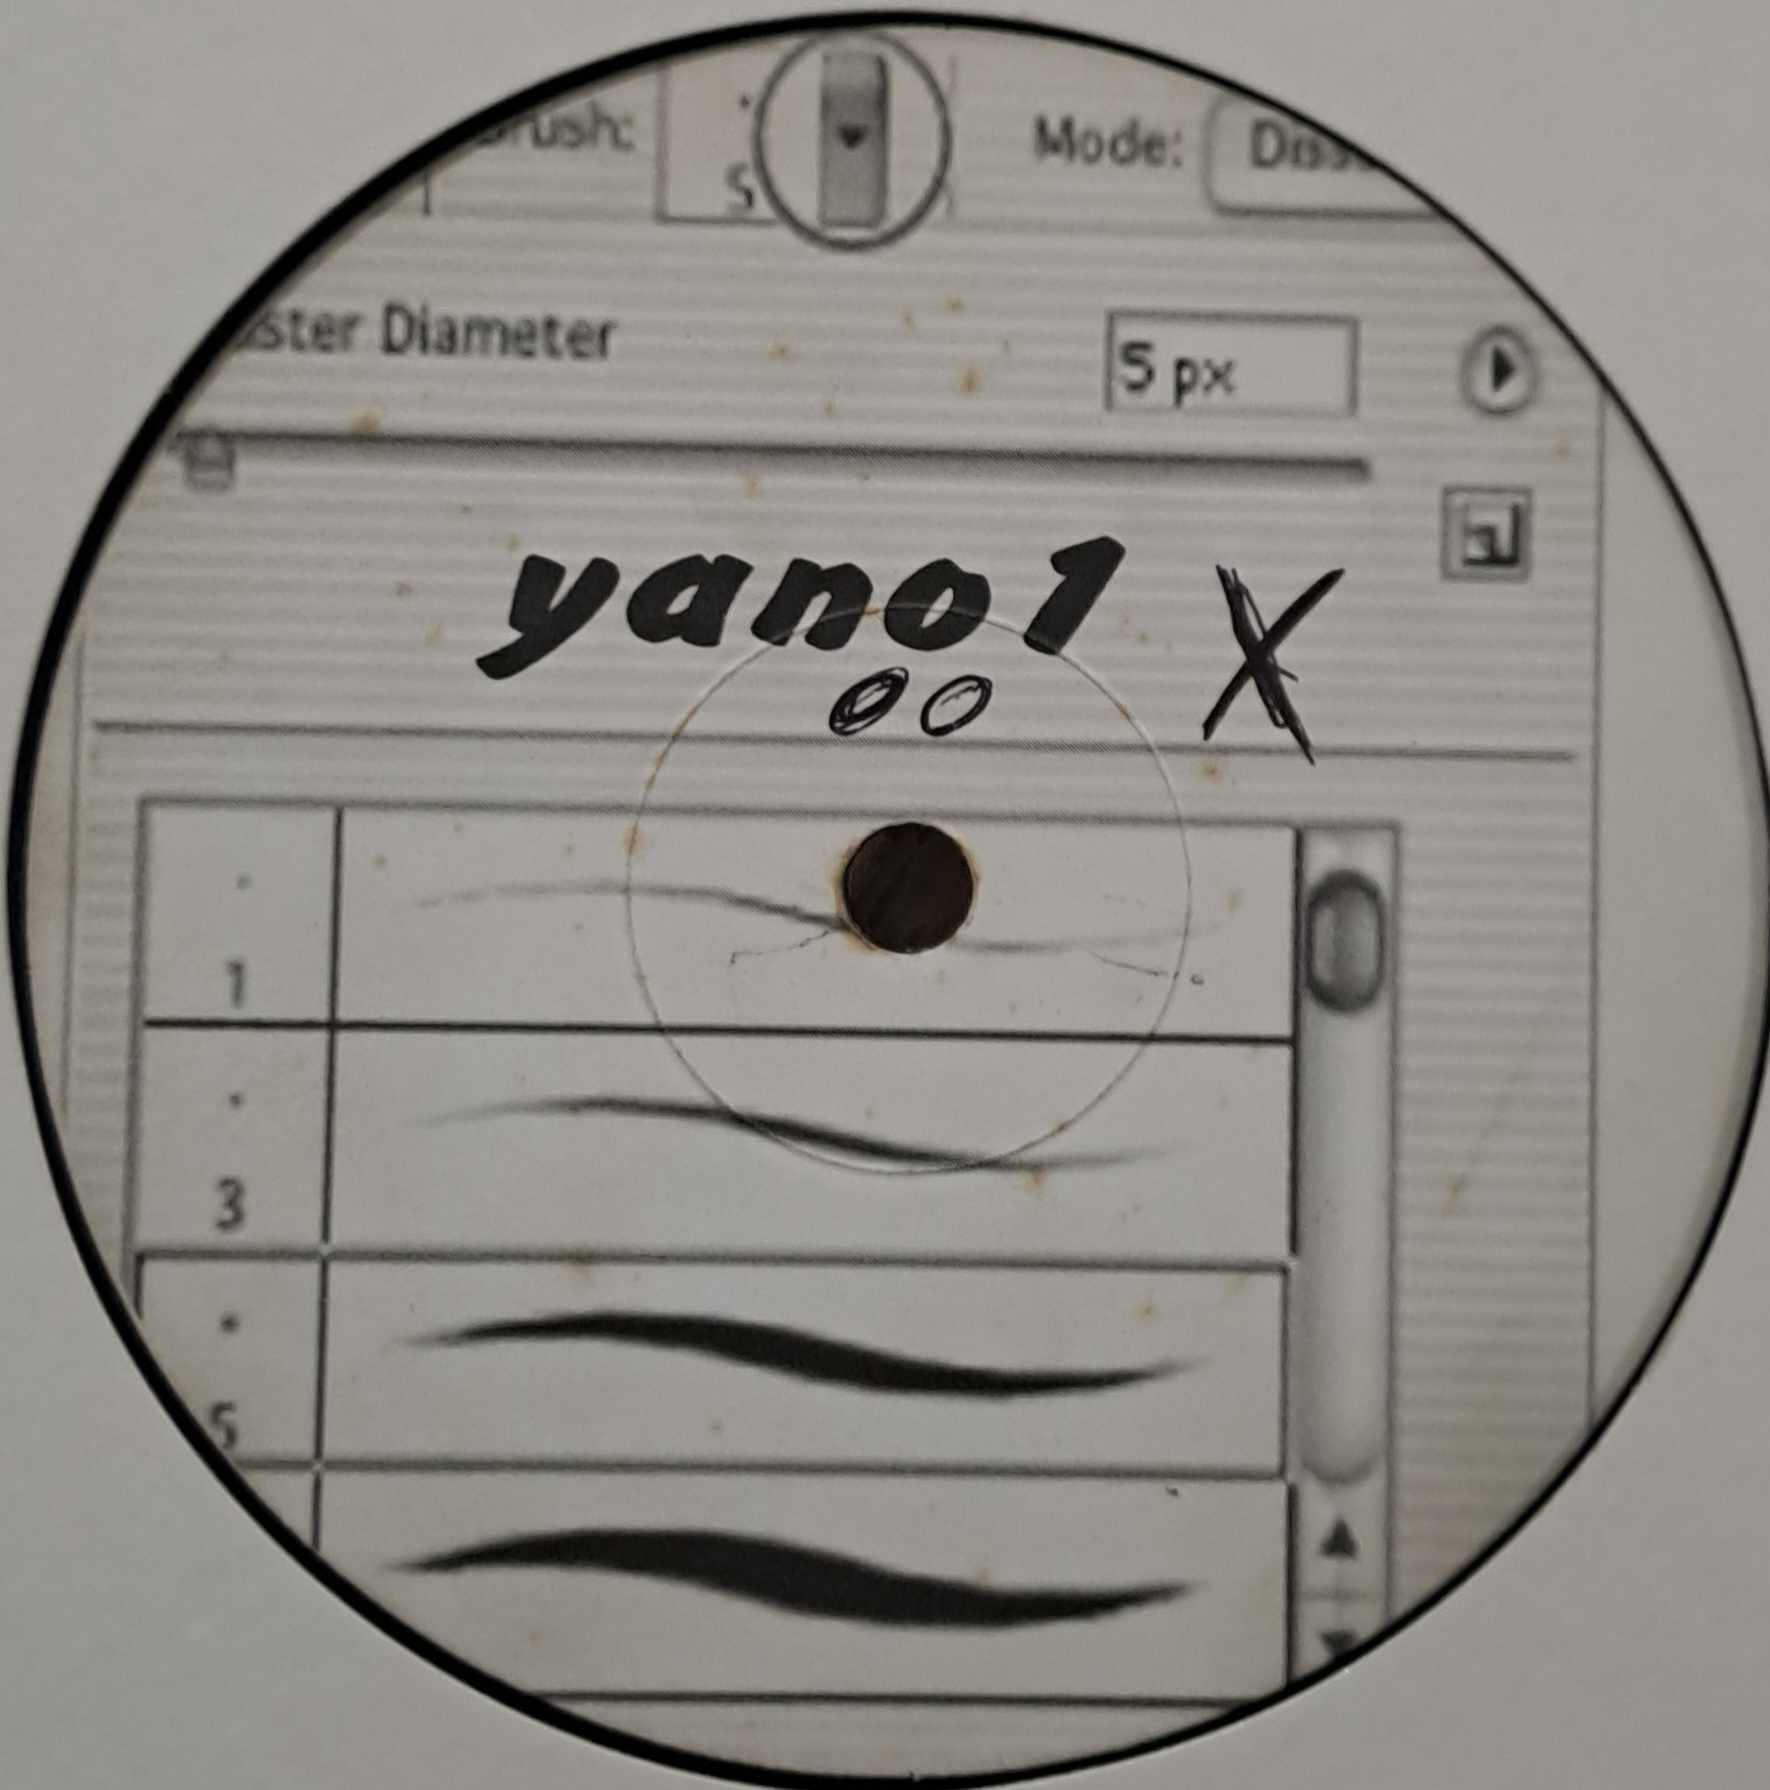 Yano 1 - vinyle freetekno